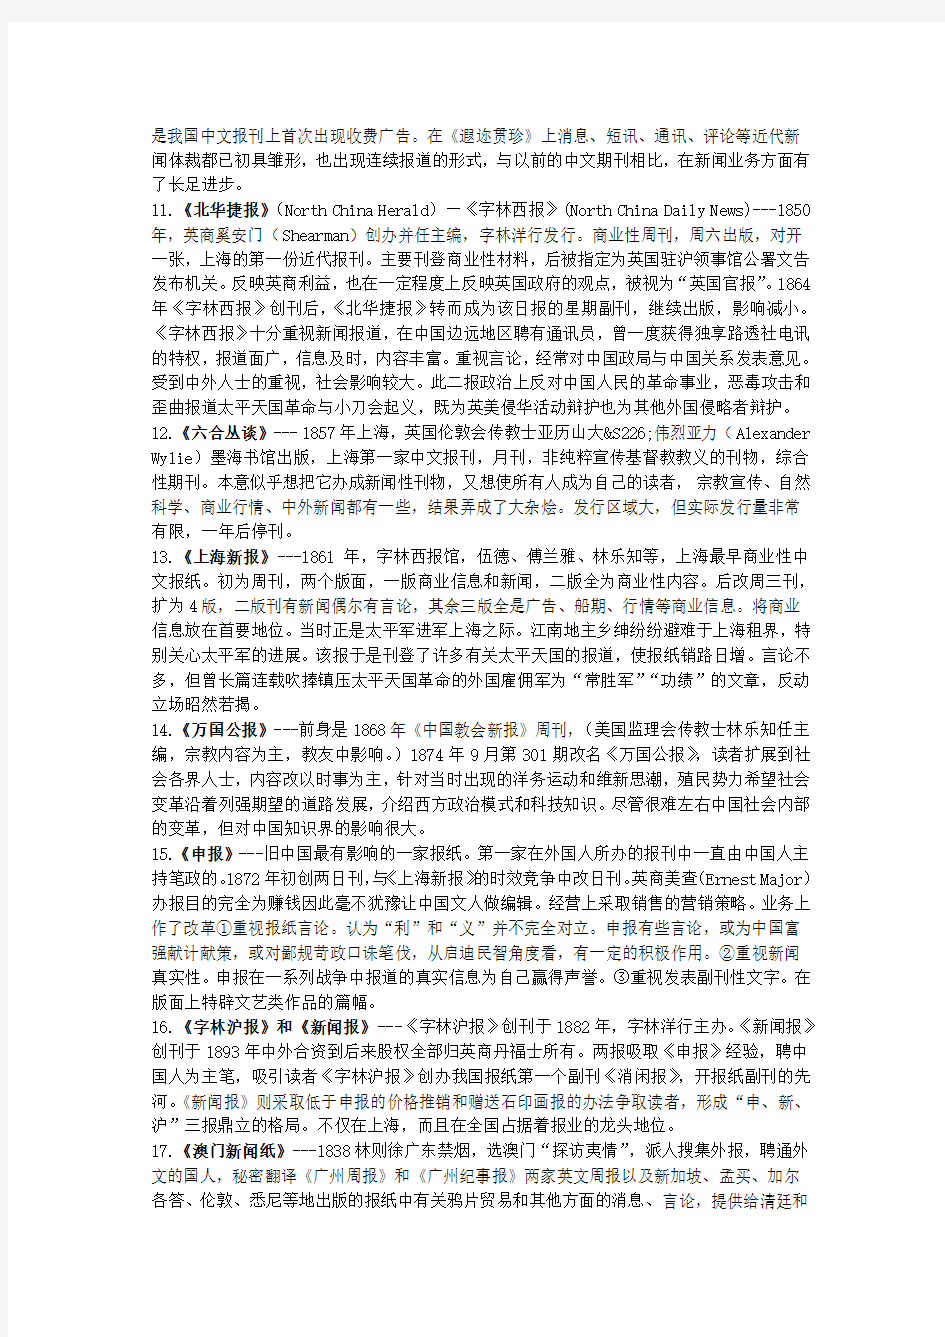 湖大传播学考研 中国新闻史重点报刊76个名词解释